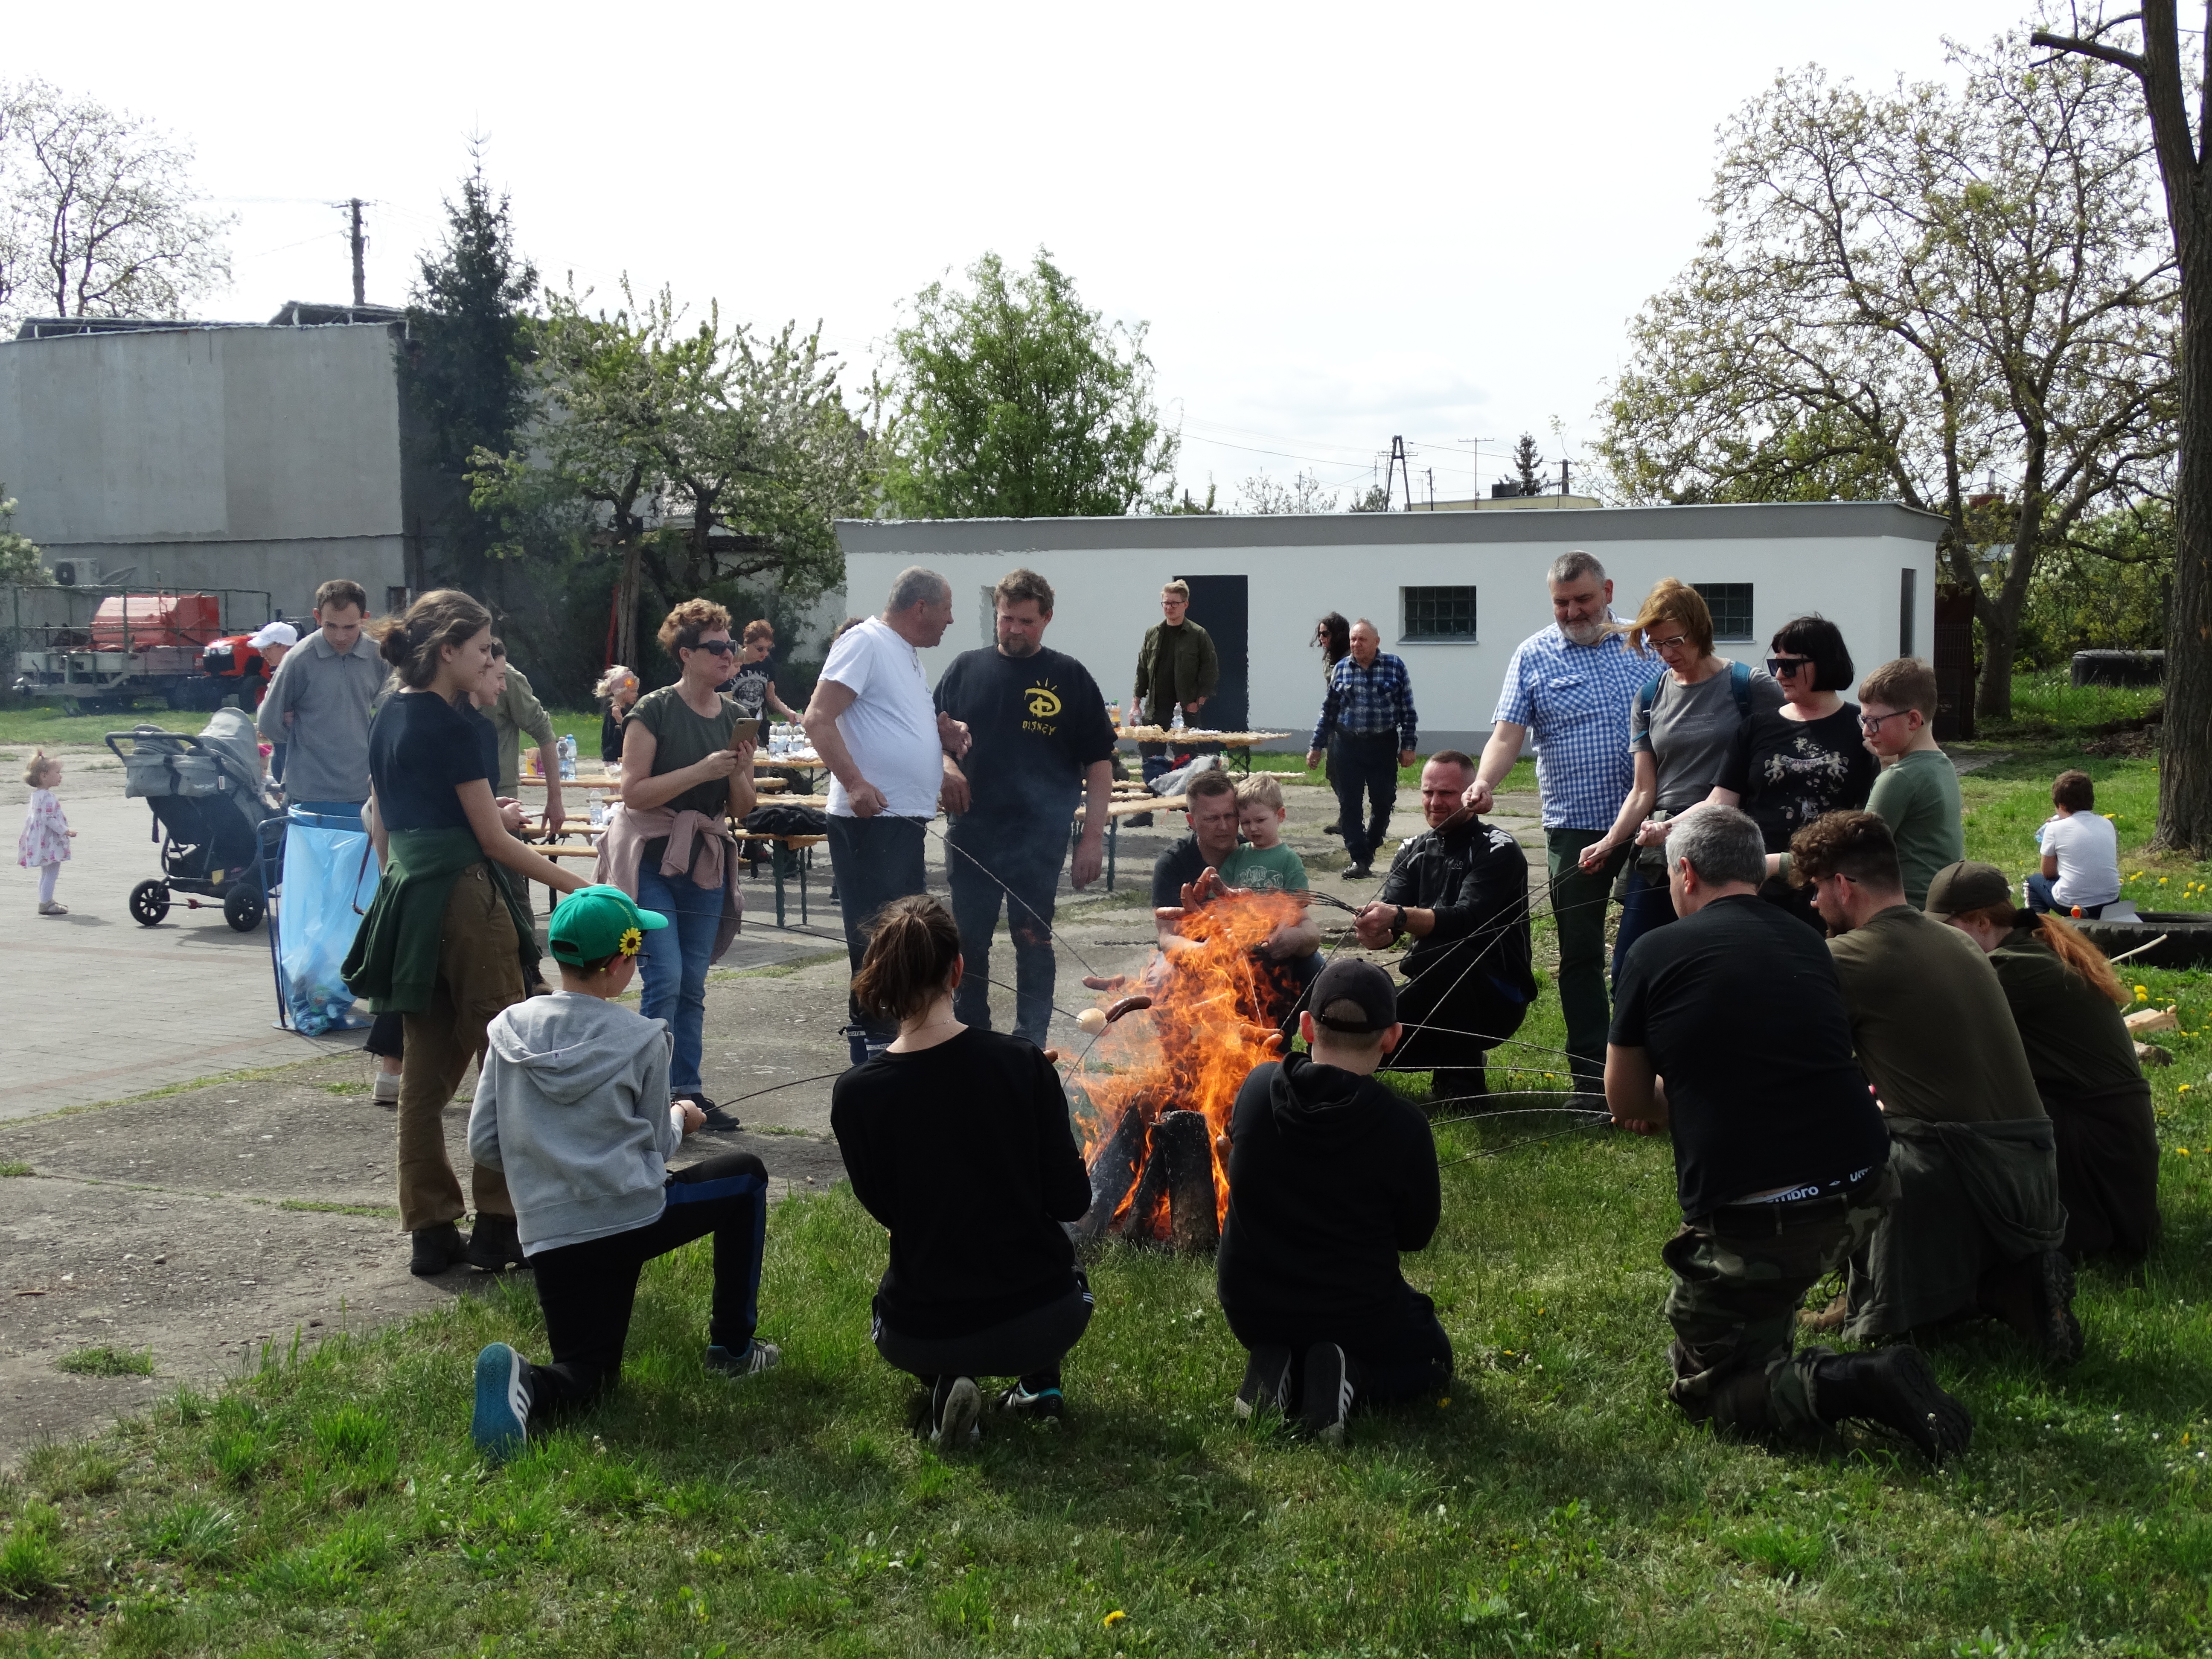 Zdjęcie przedstawia uczestników akcji pieczących kiełbasy przy ognisku.